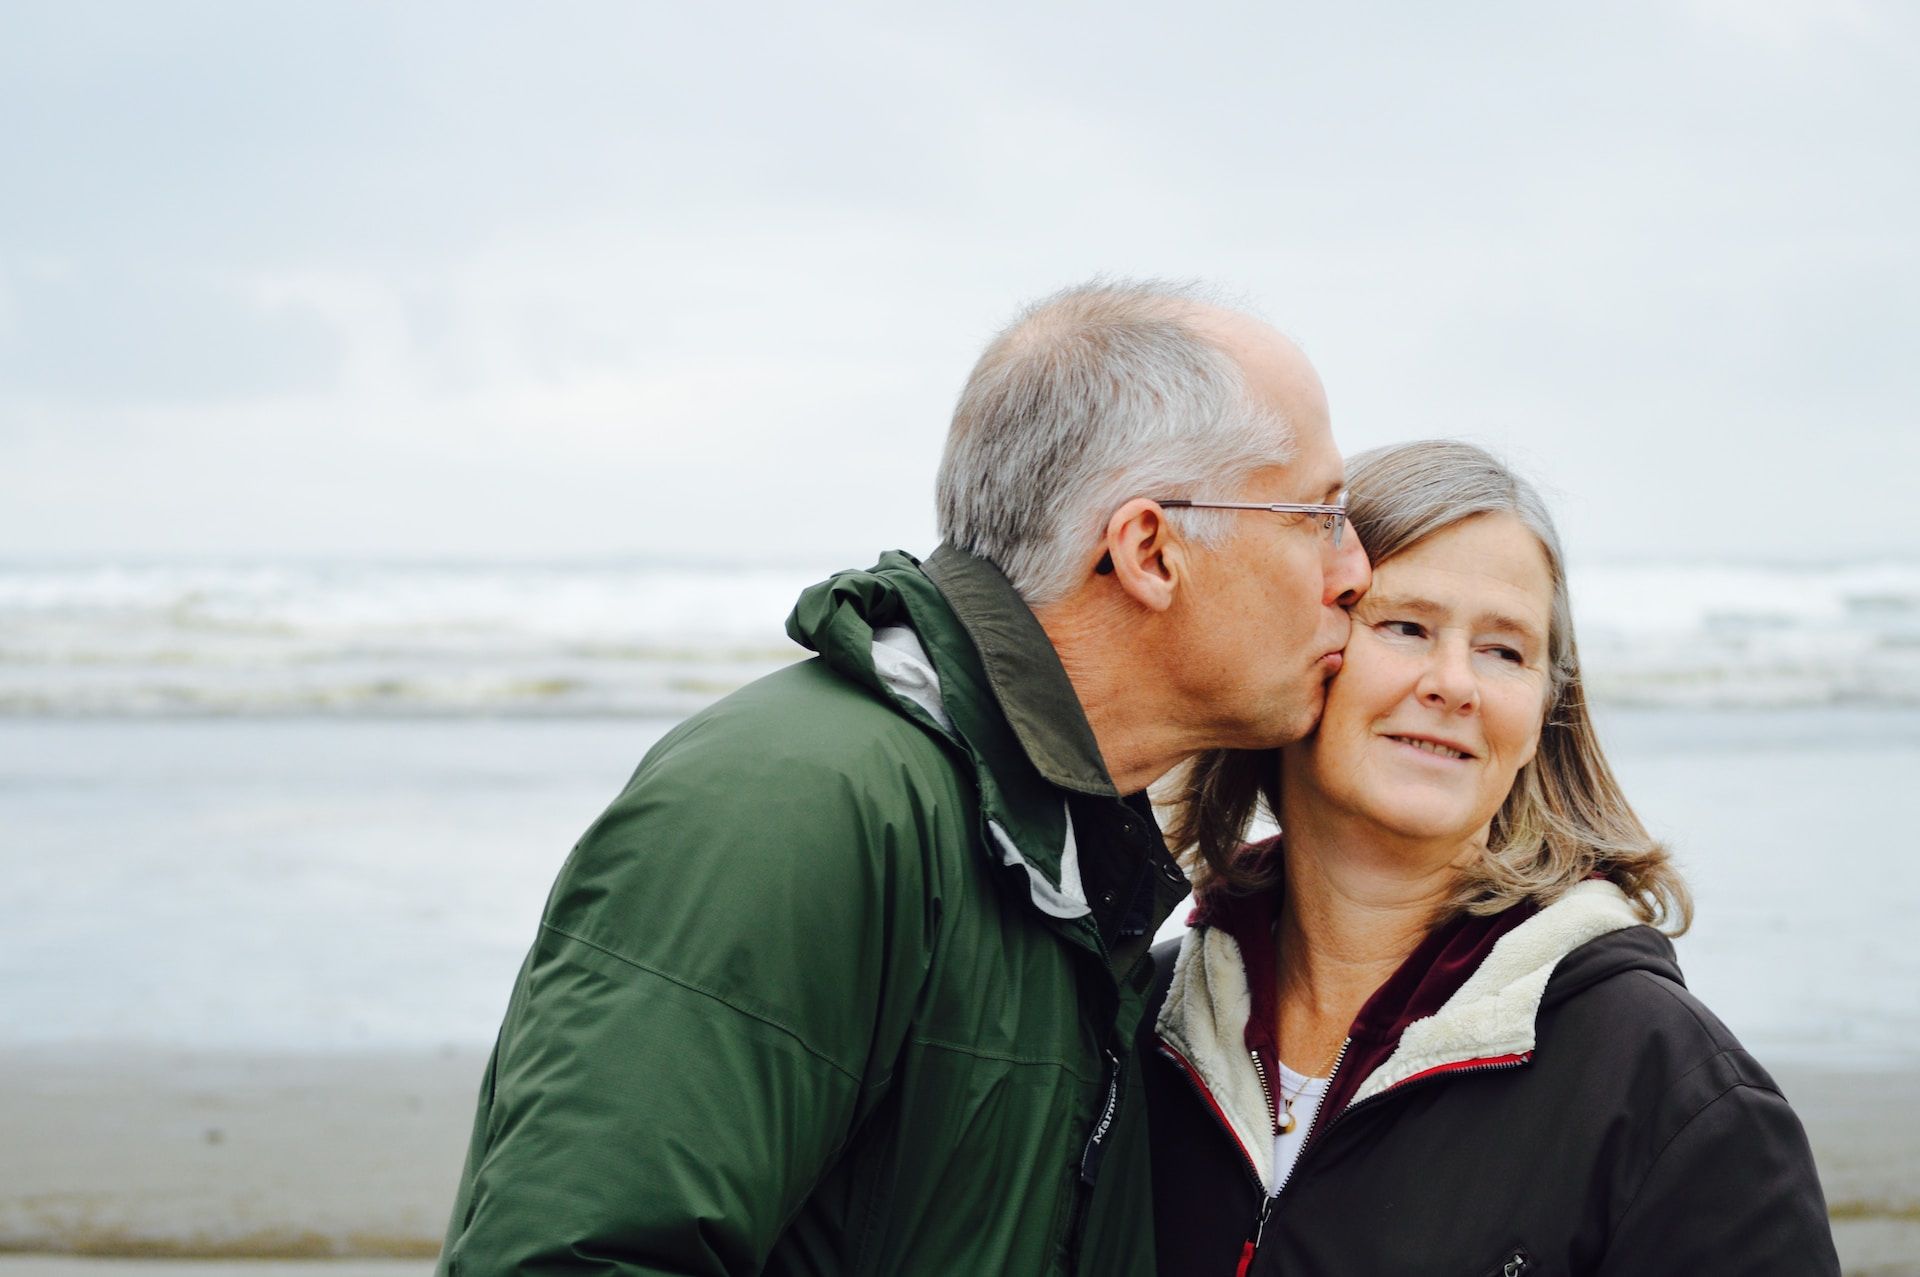 Un couple de personne d'âge moyen en bord de mer, le mari pose un baiser sur la joue de sa femme qui détourne de regard - Photo by Esther Ann on https://unsplash.com/fr/photos/homme-embrassant-femme-sur-cheque-a-cote-dun-plan-deau-glpYh1cWf0o